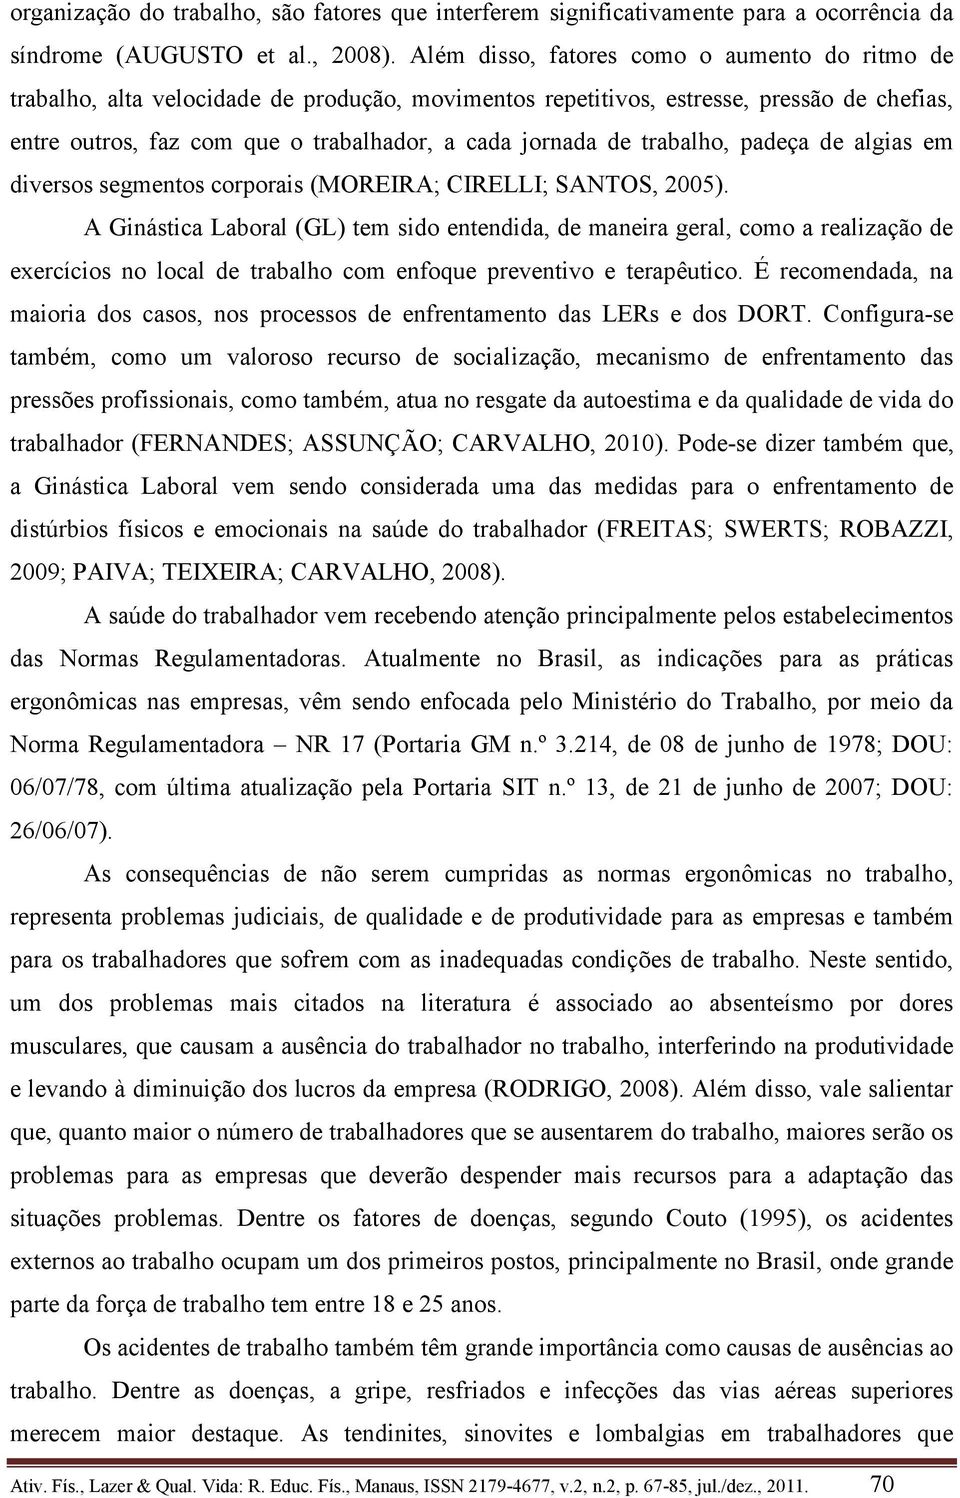 trabalho, padeça de algias em diversos segmentos corporais (MOREIRA; CIRELLI; SANTOS, 2005).